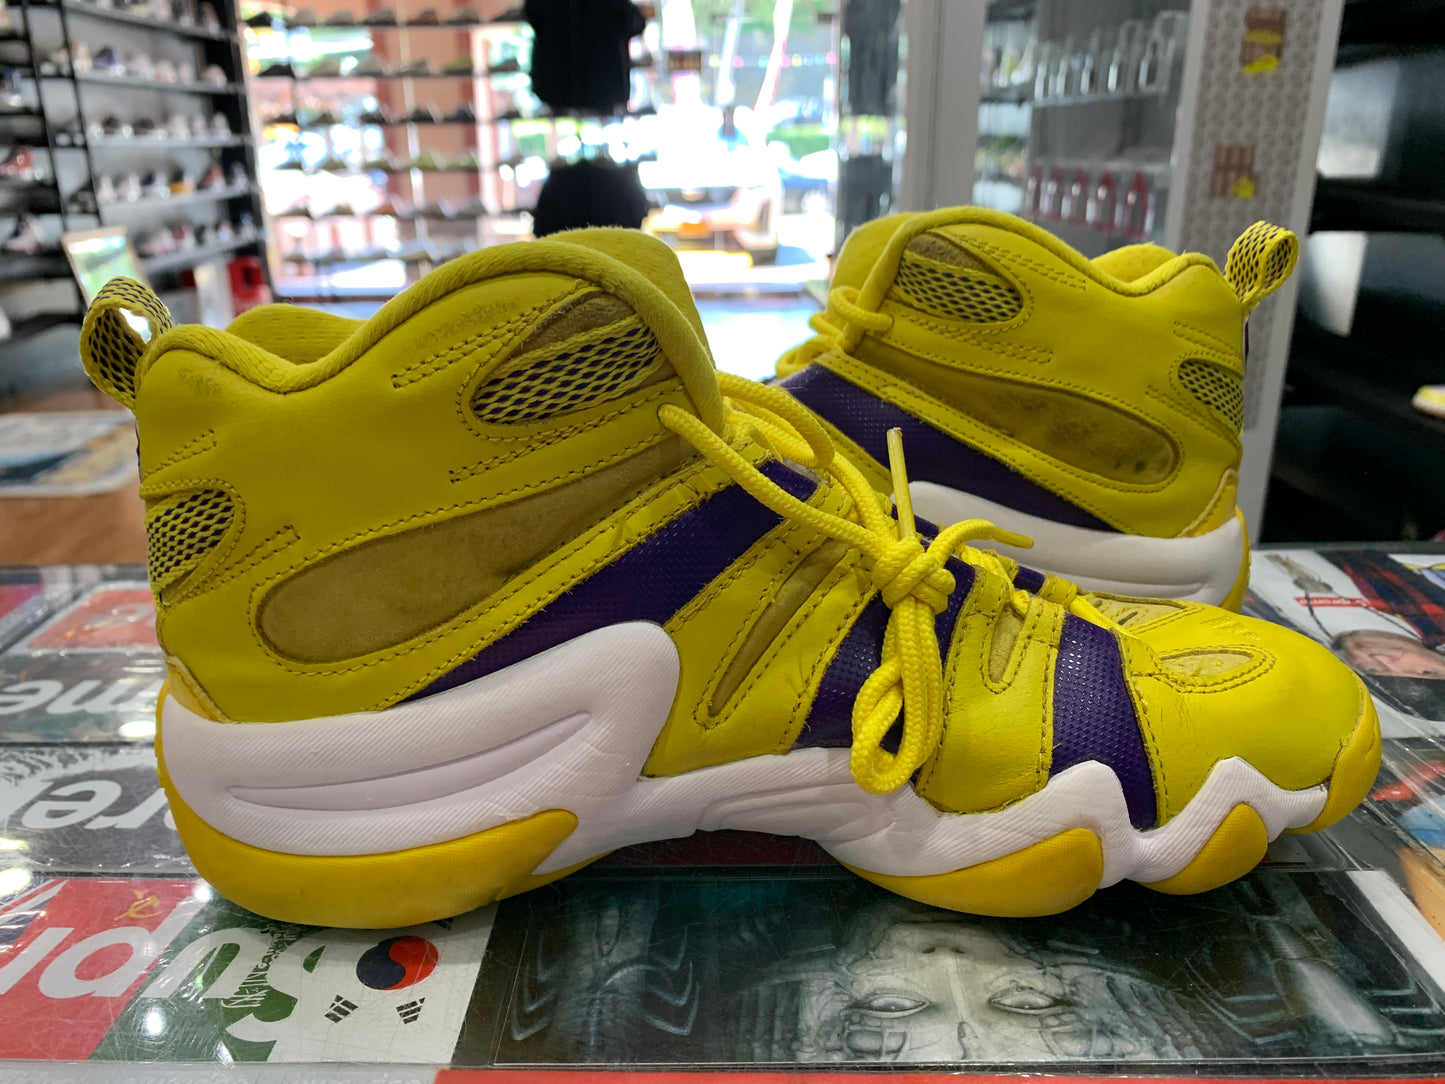 Adidas Kobe Crazy 8 Lakers Size 8 BK